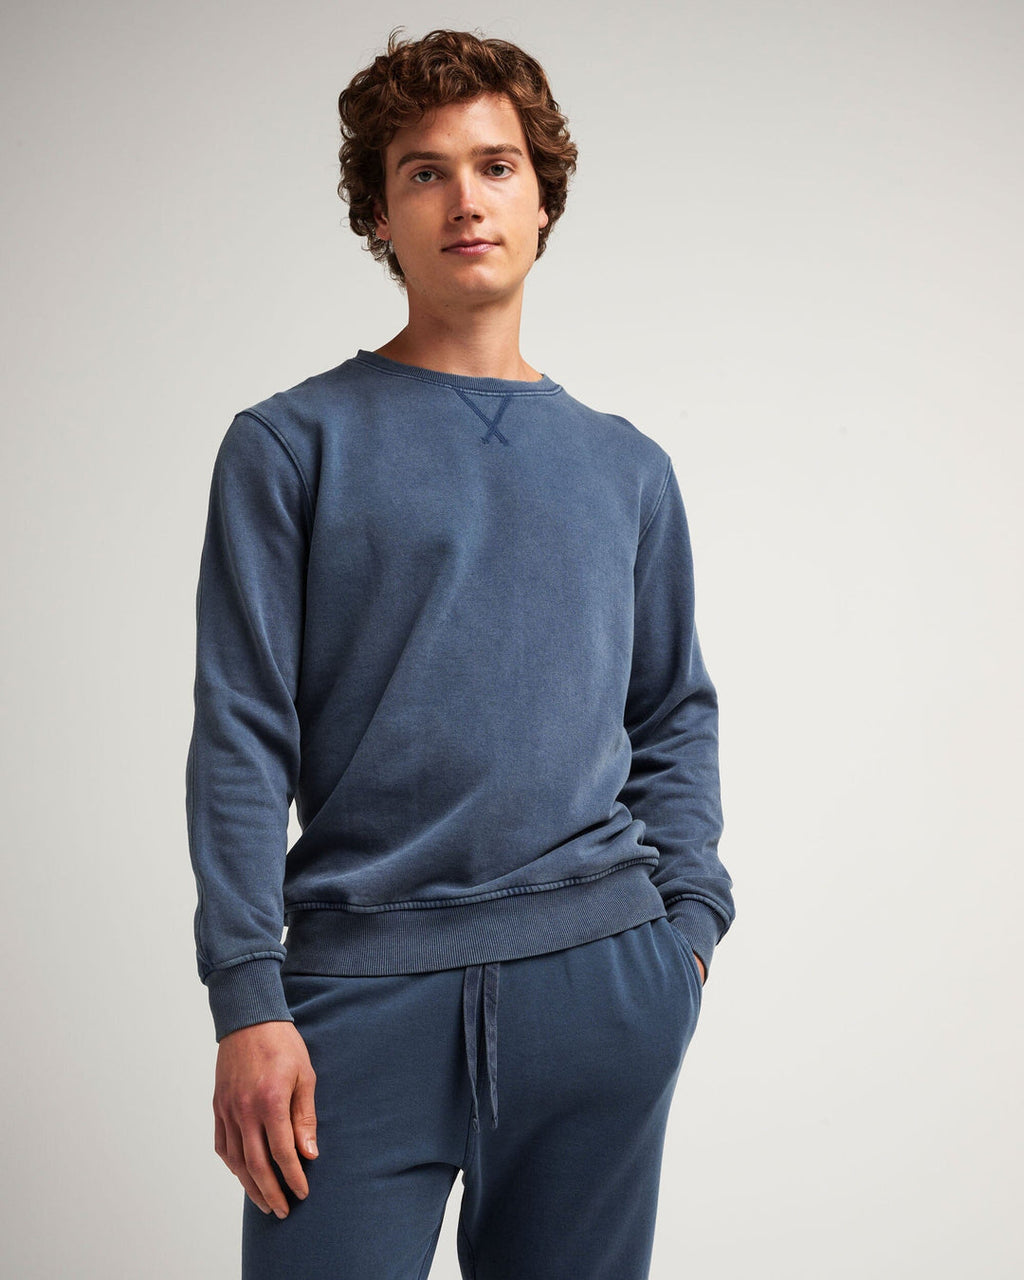 Recycled Fleece Sweatshirt- Mineral Moonlit Ocean